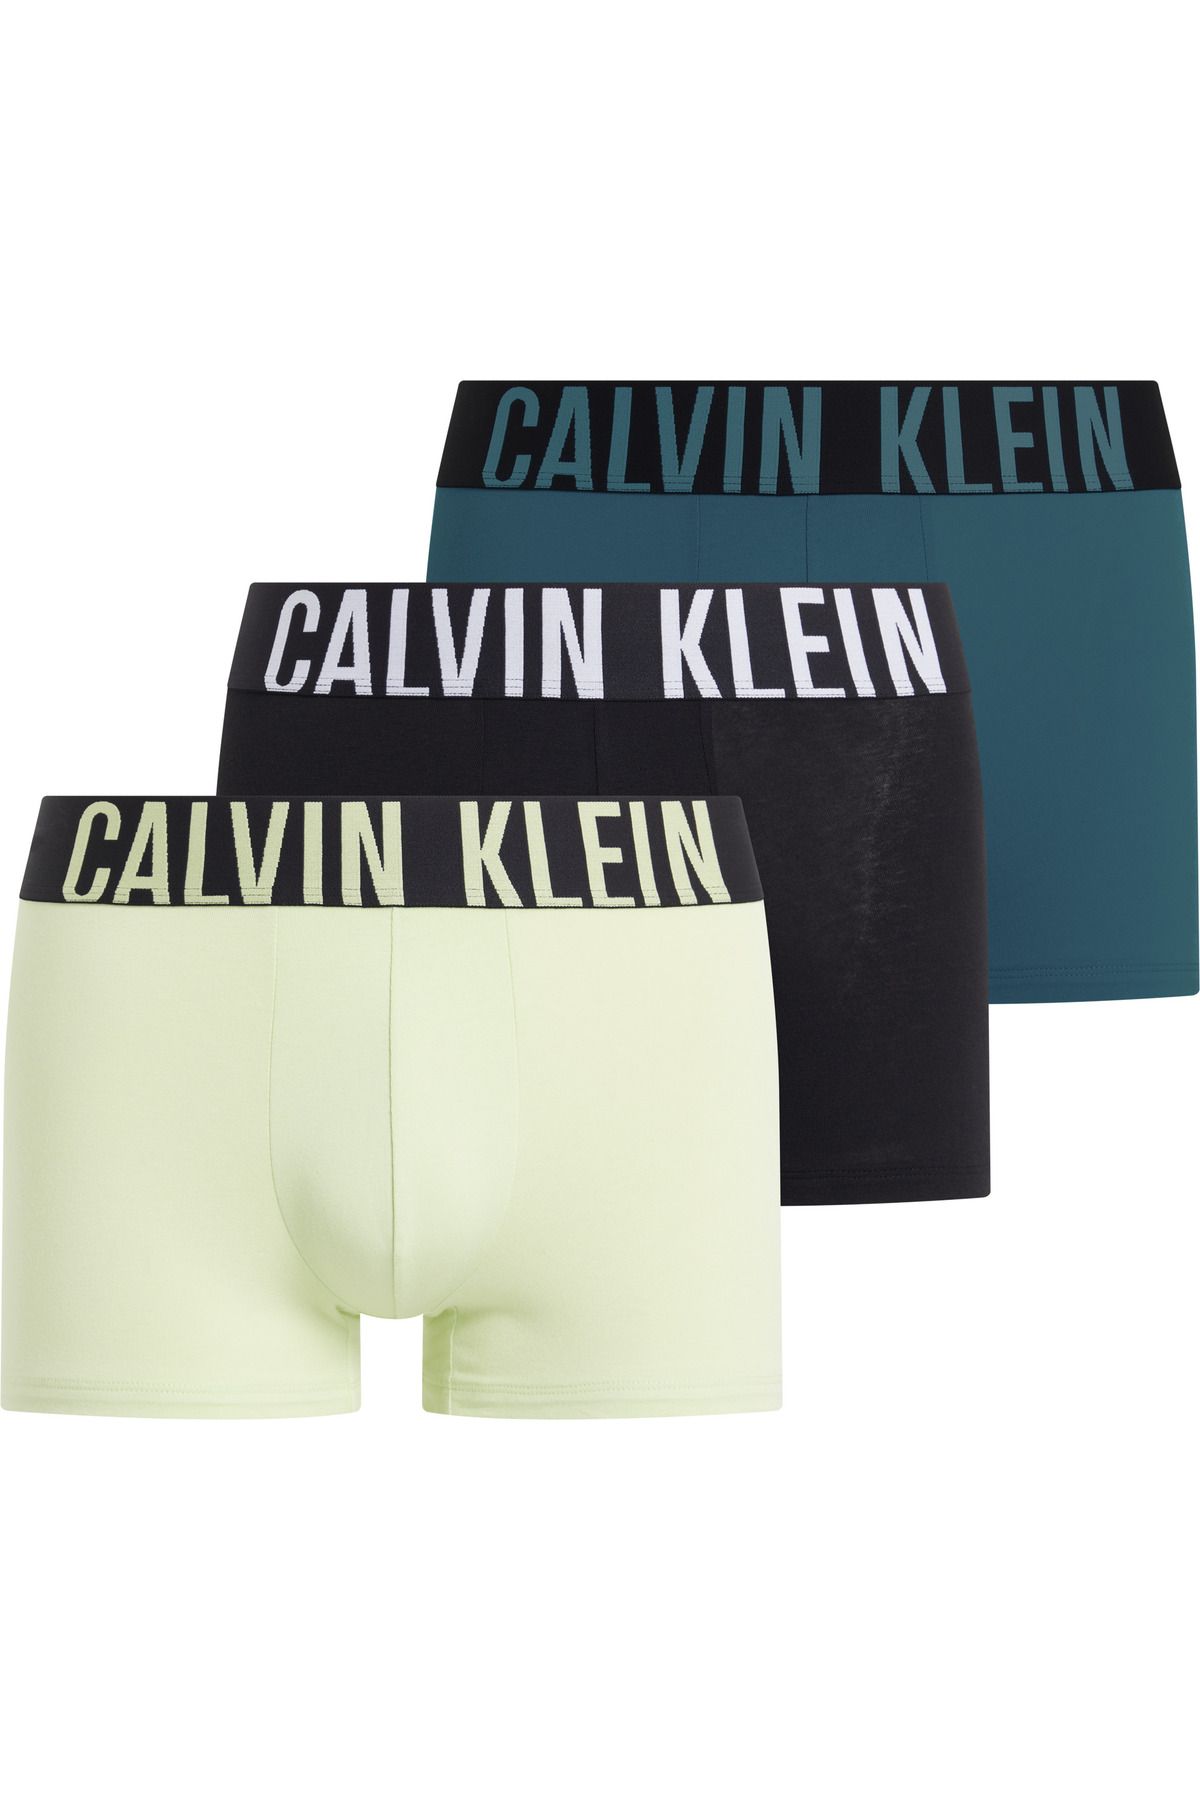 Calvin Klein Erkek Marka Logolu Elastik Bantlı Günlük Kullanıma Uygun Yeşil-siyah-turkuaz Boxer 000nb3608a-og5